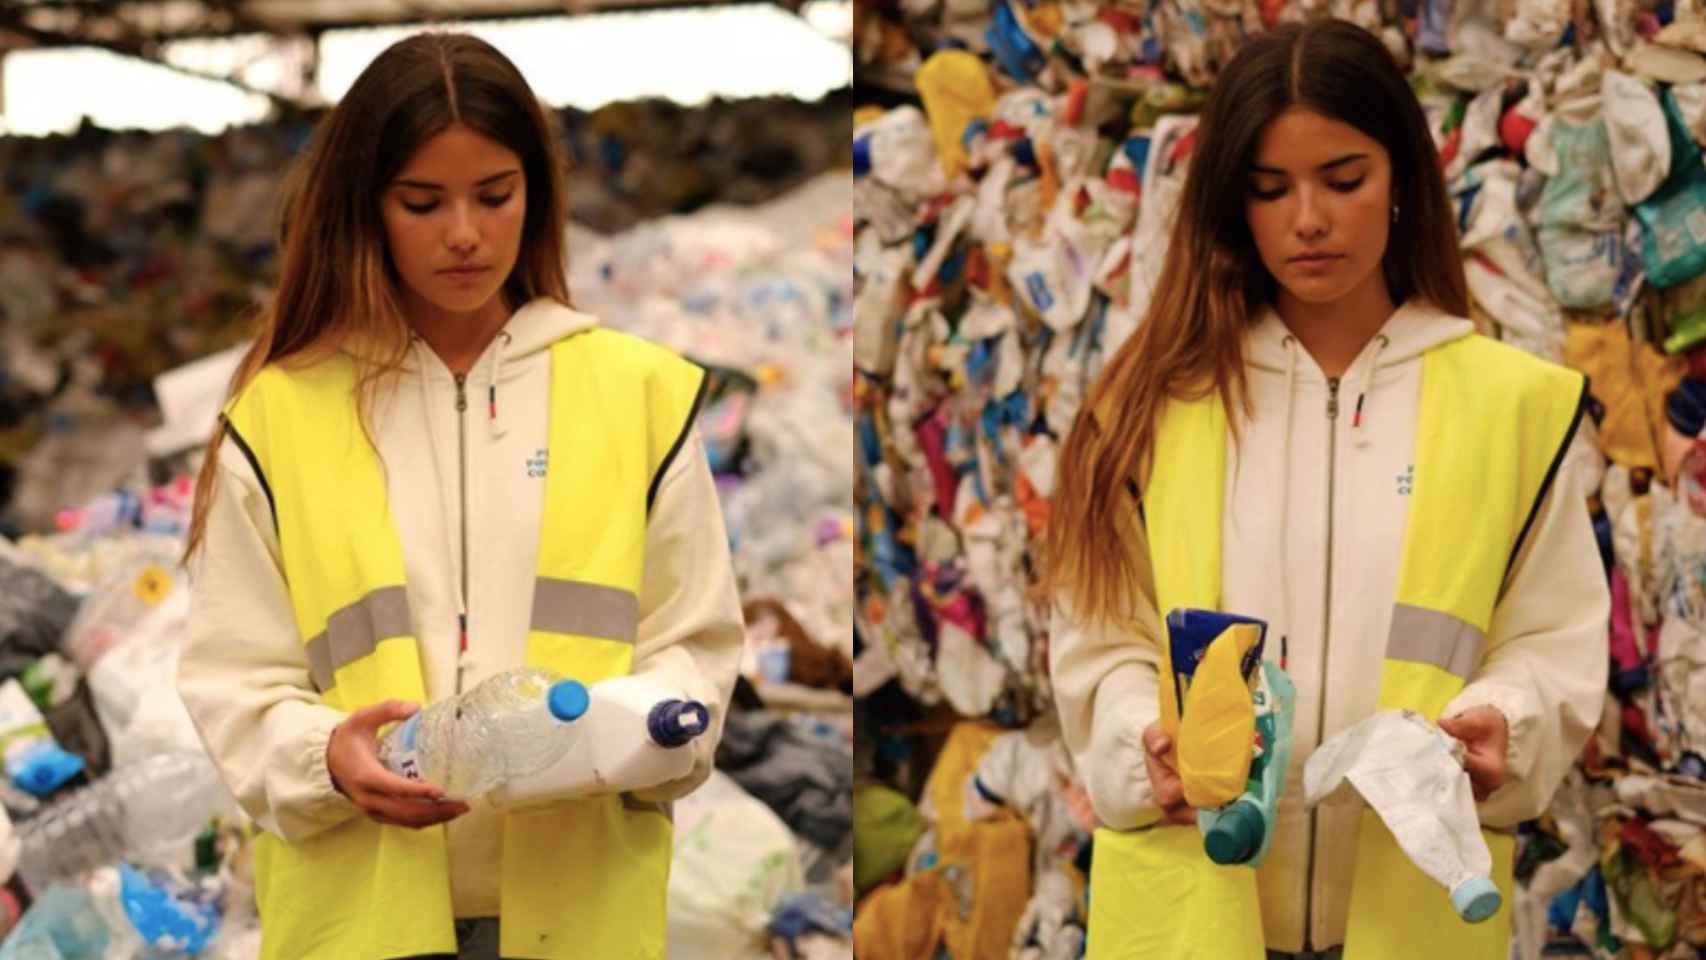 La influencer y activista Carlota Bruna en la planta de reciclaje de plástico de Barcelona / INSTAGRAM